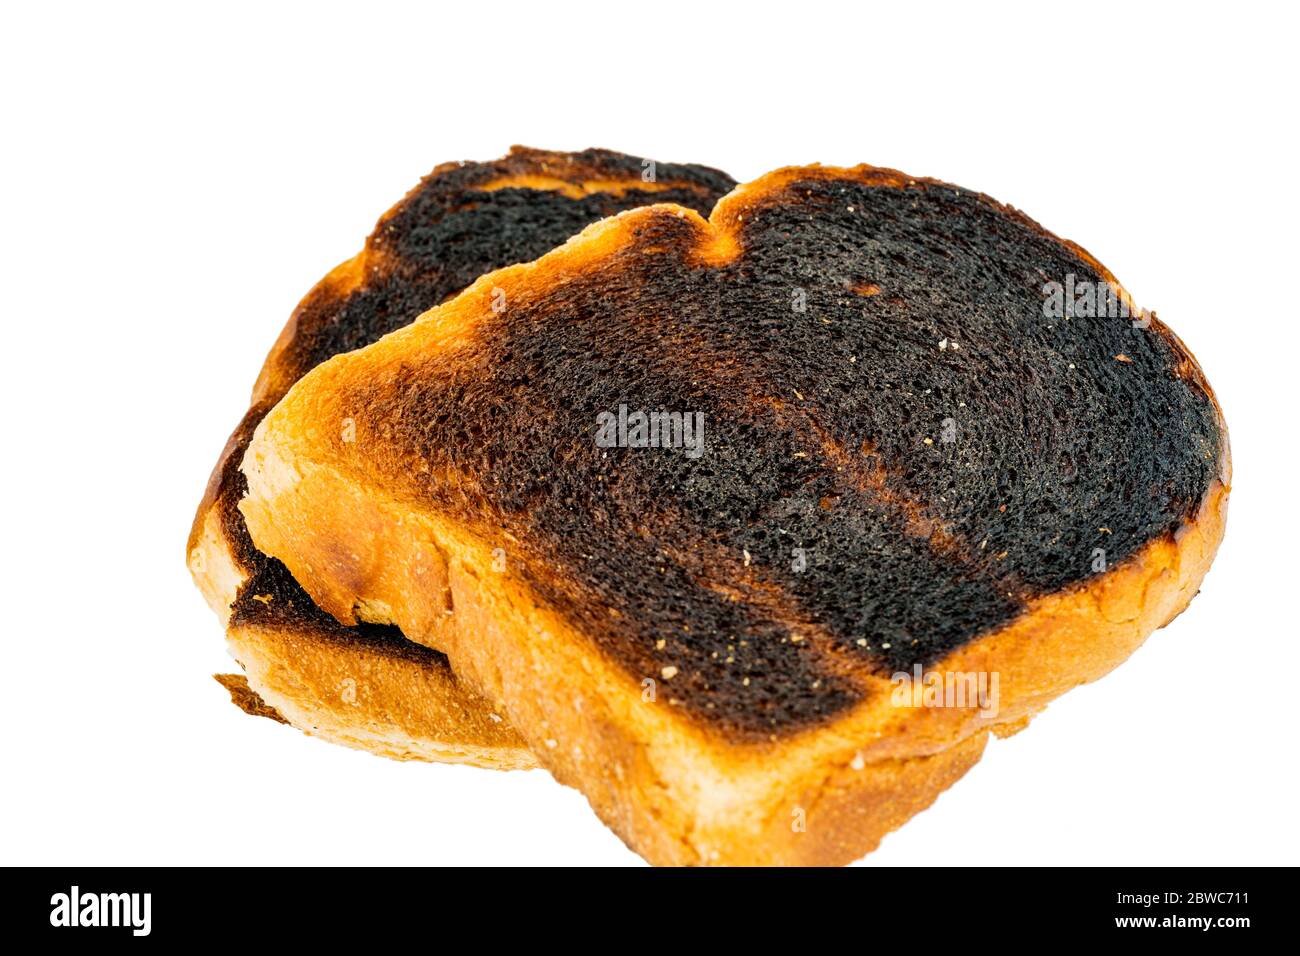 Toastbrot wurde beim toasten verbrannt. Verbrannte Toastscheiben beim Fruehstueck. Stock Photo